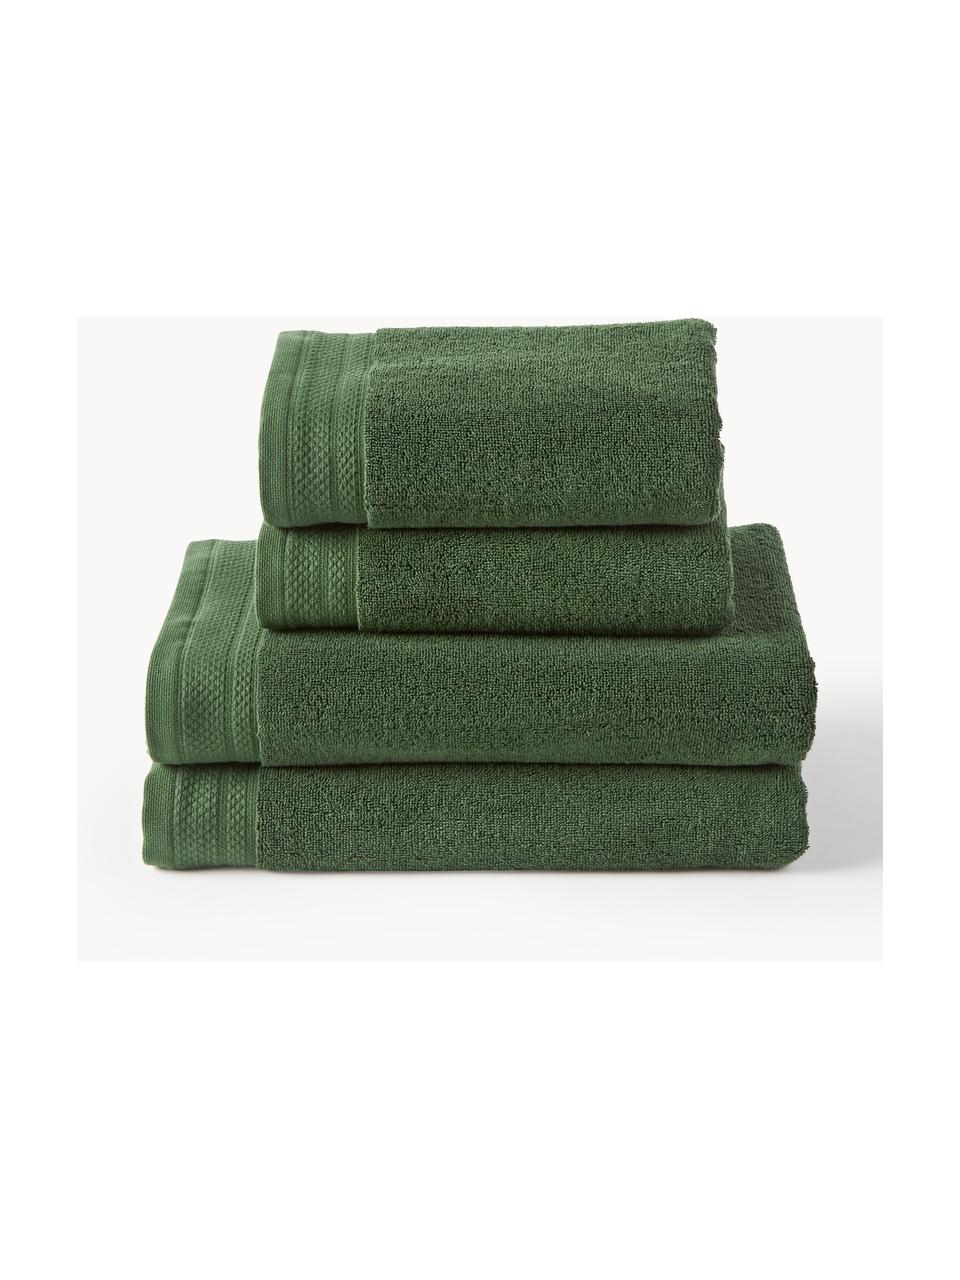 Set asciugamani in cotone organico Premium, varie misure, 100% cotone organico certificato GOTS (da GCL International, GCL-300517).
Qualità pesante, 600 g/m², Verde scuro, Set da 6 (asciugamano ospiti, asciugamano e telo bagno)